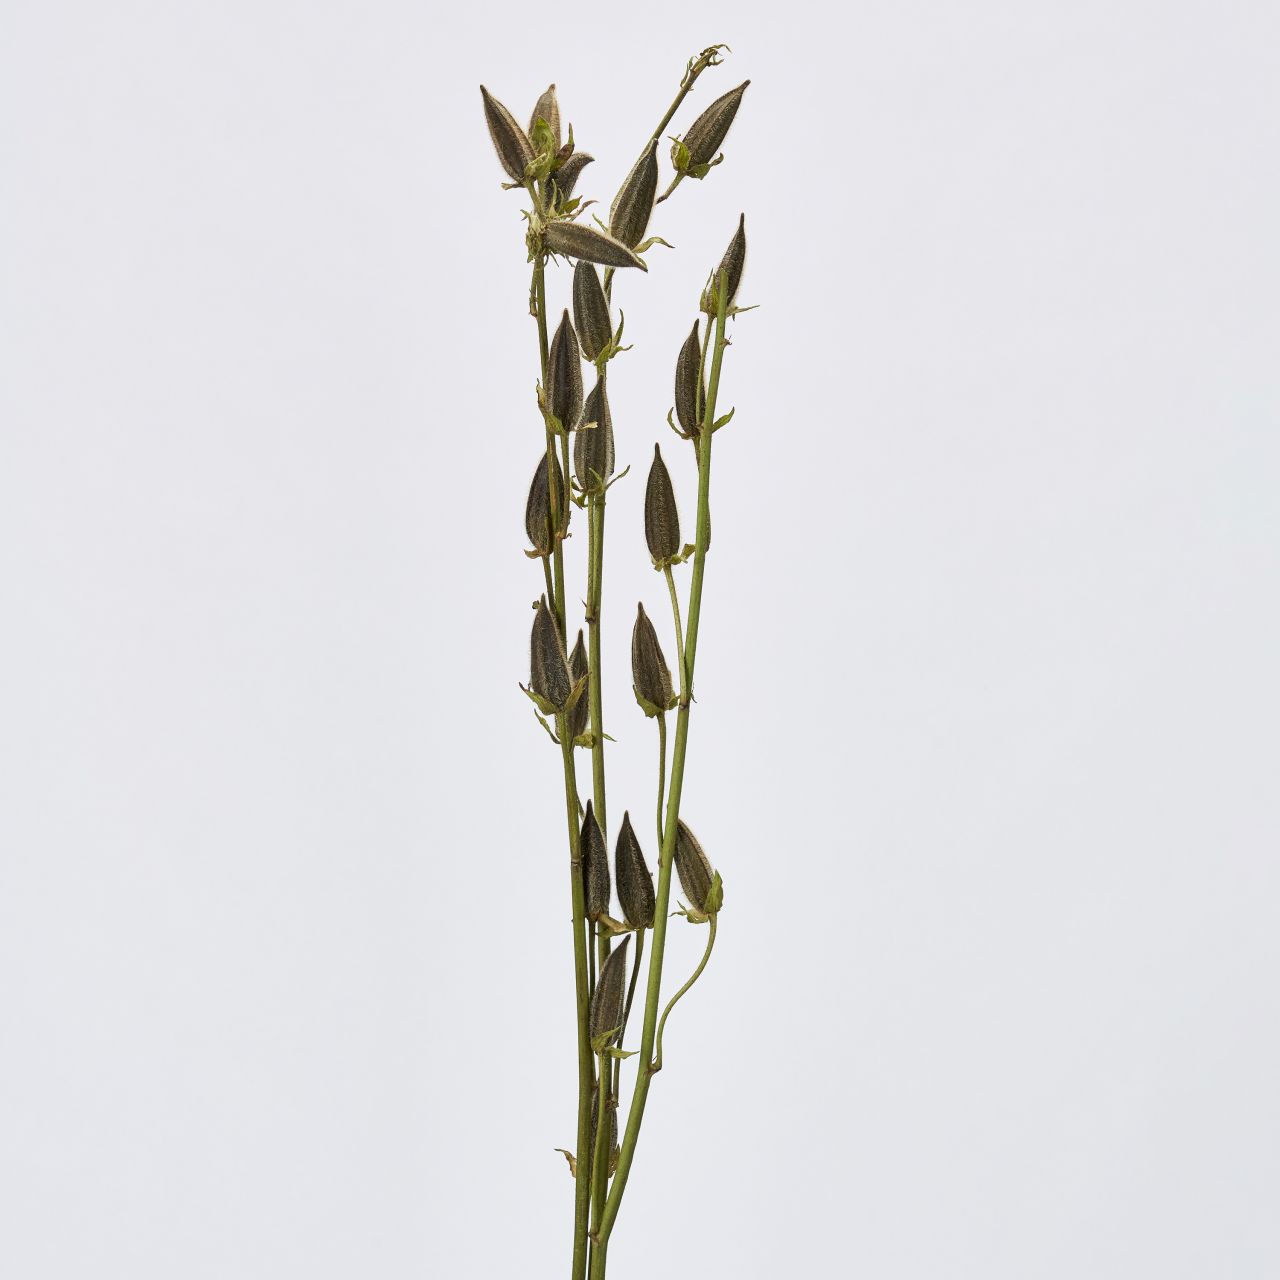 マイフラ 通販 風の花 花オクラ ドライフラワー ナチュラル Dn 長さ 約65 80cm ドライフラワー ナチュラル素材 全国にmagiq 花器 花資材などをお届けします